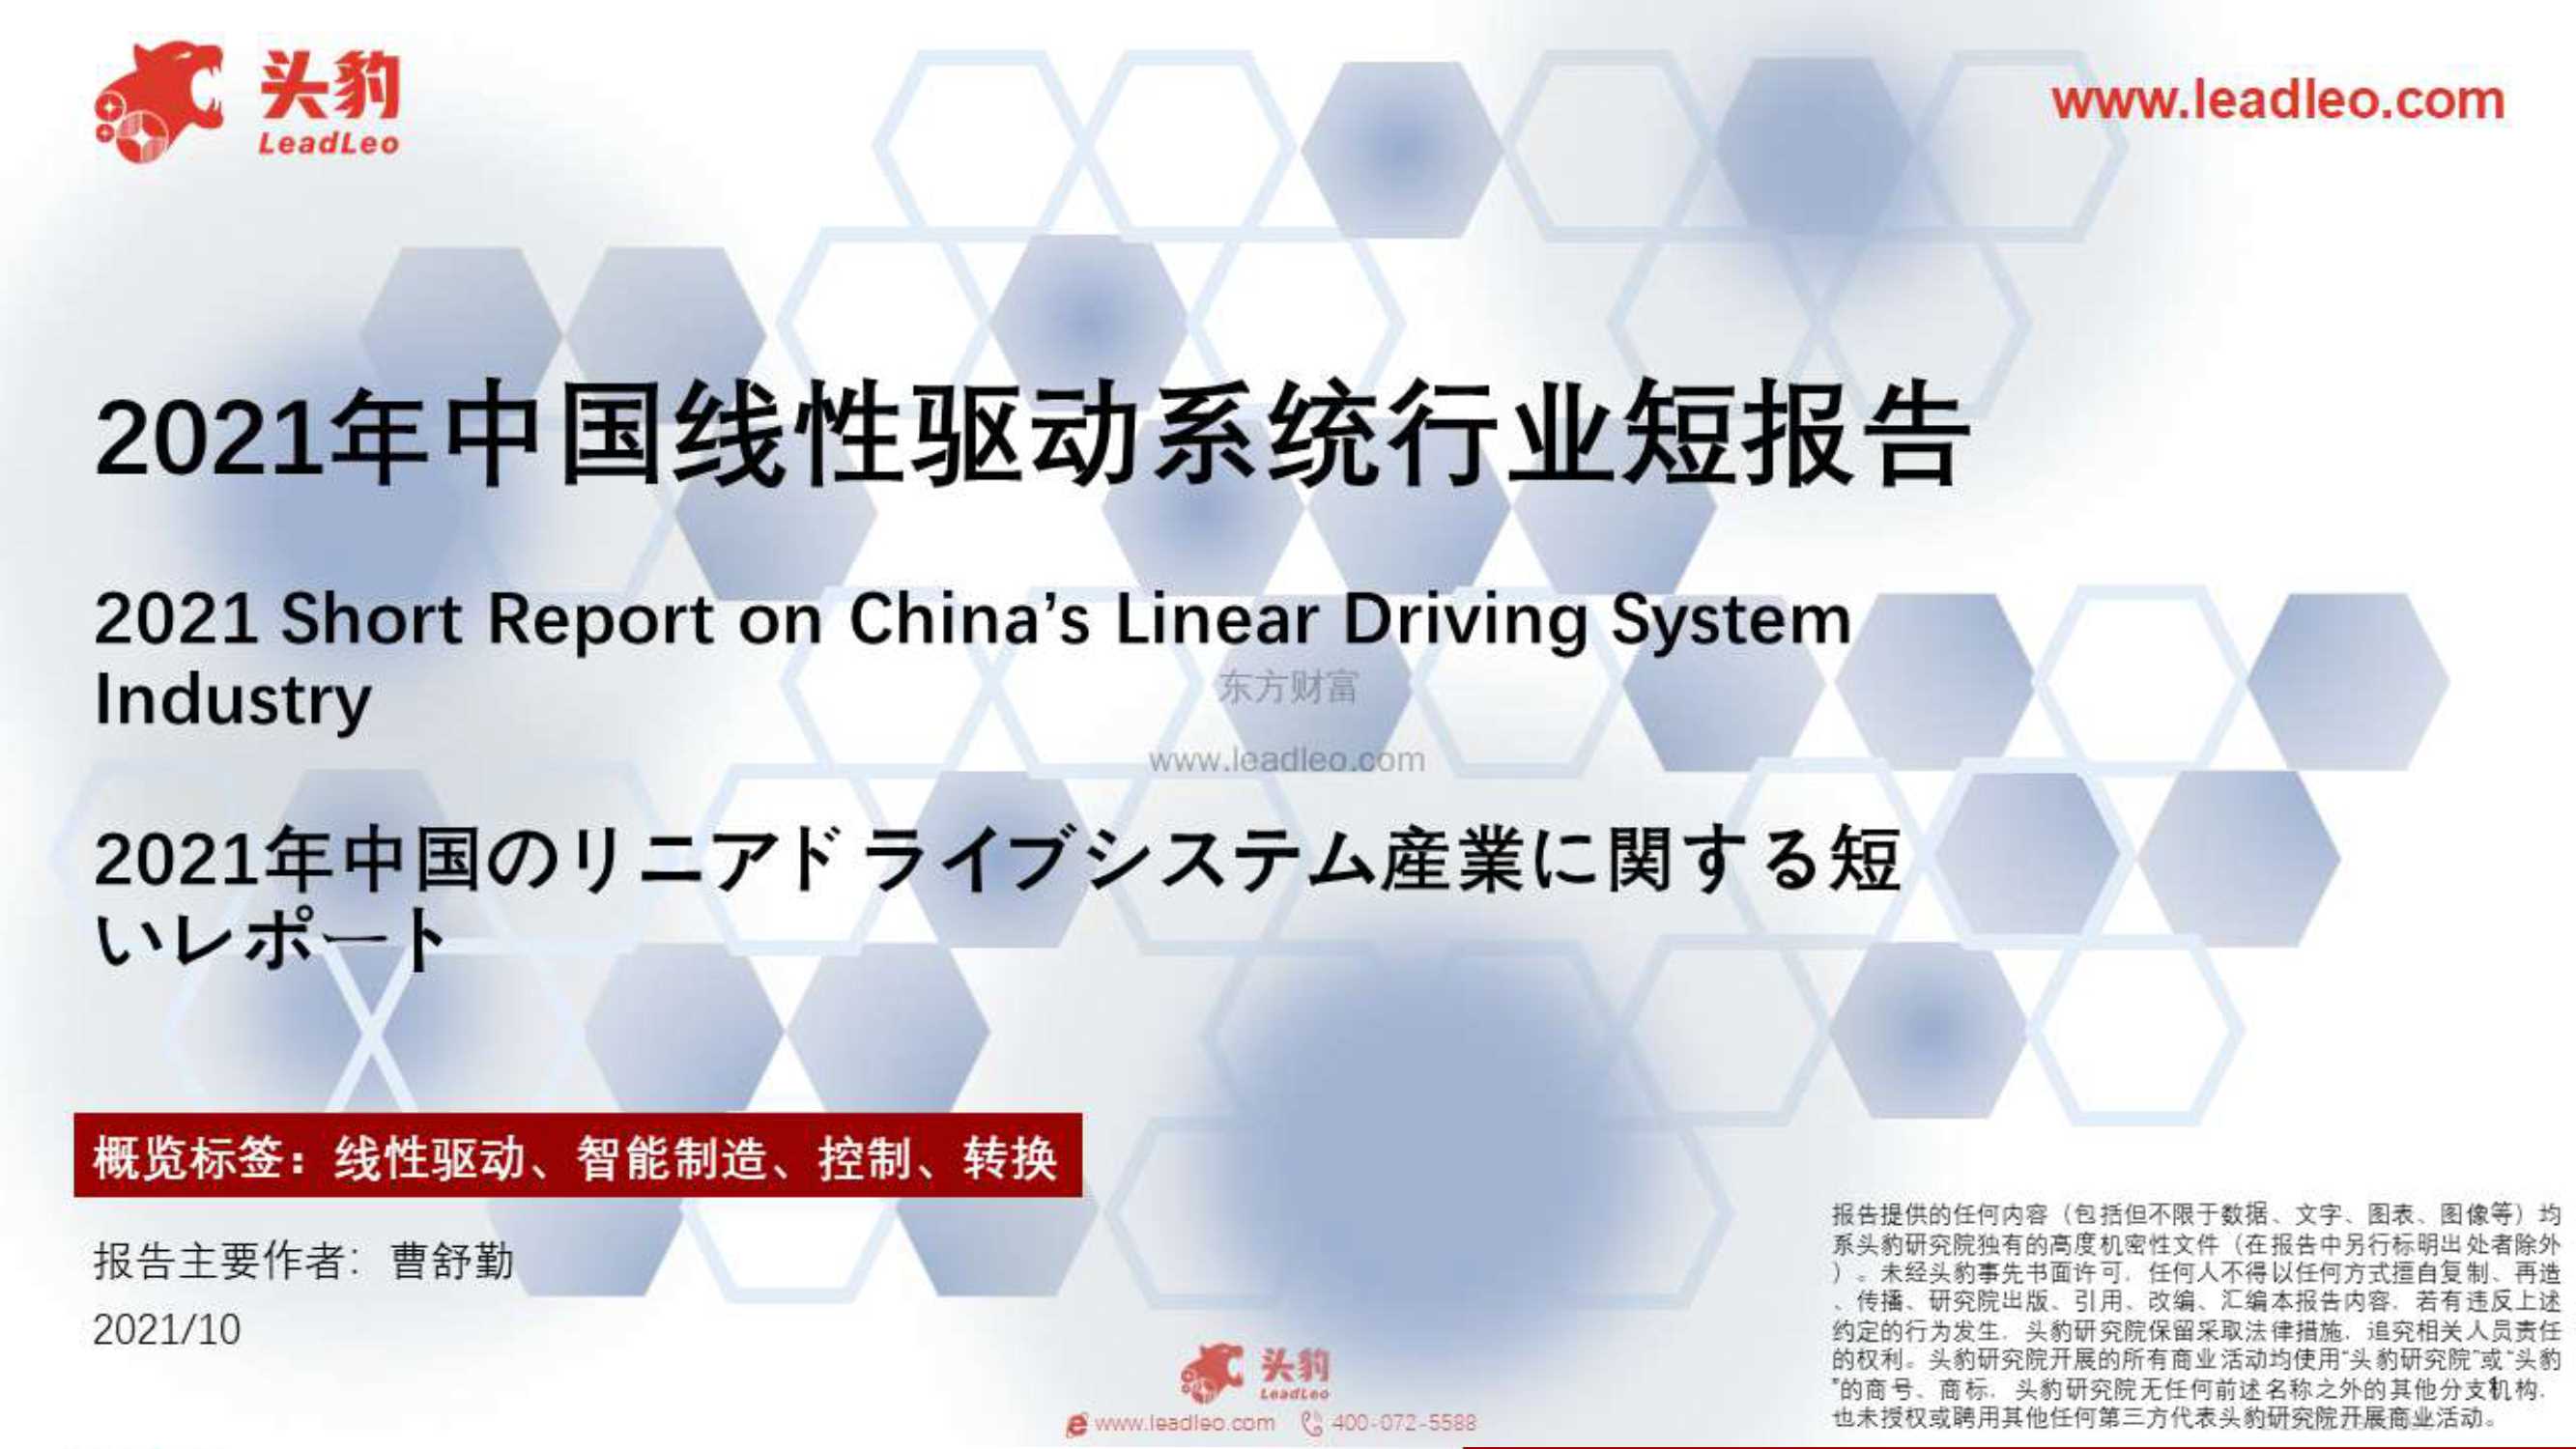 头豹研究院-2021年中国线性驱动系统行业短报告-2021.11-31页